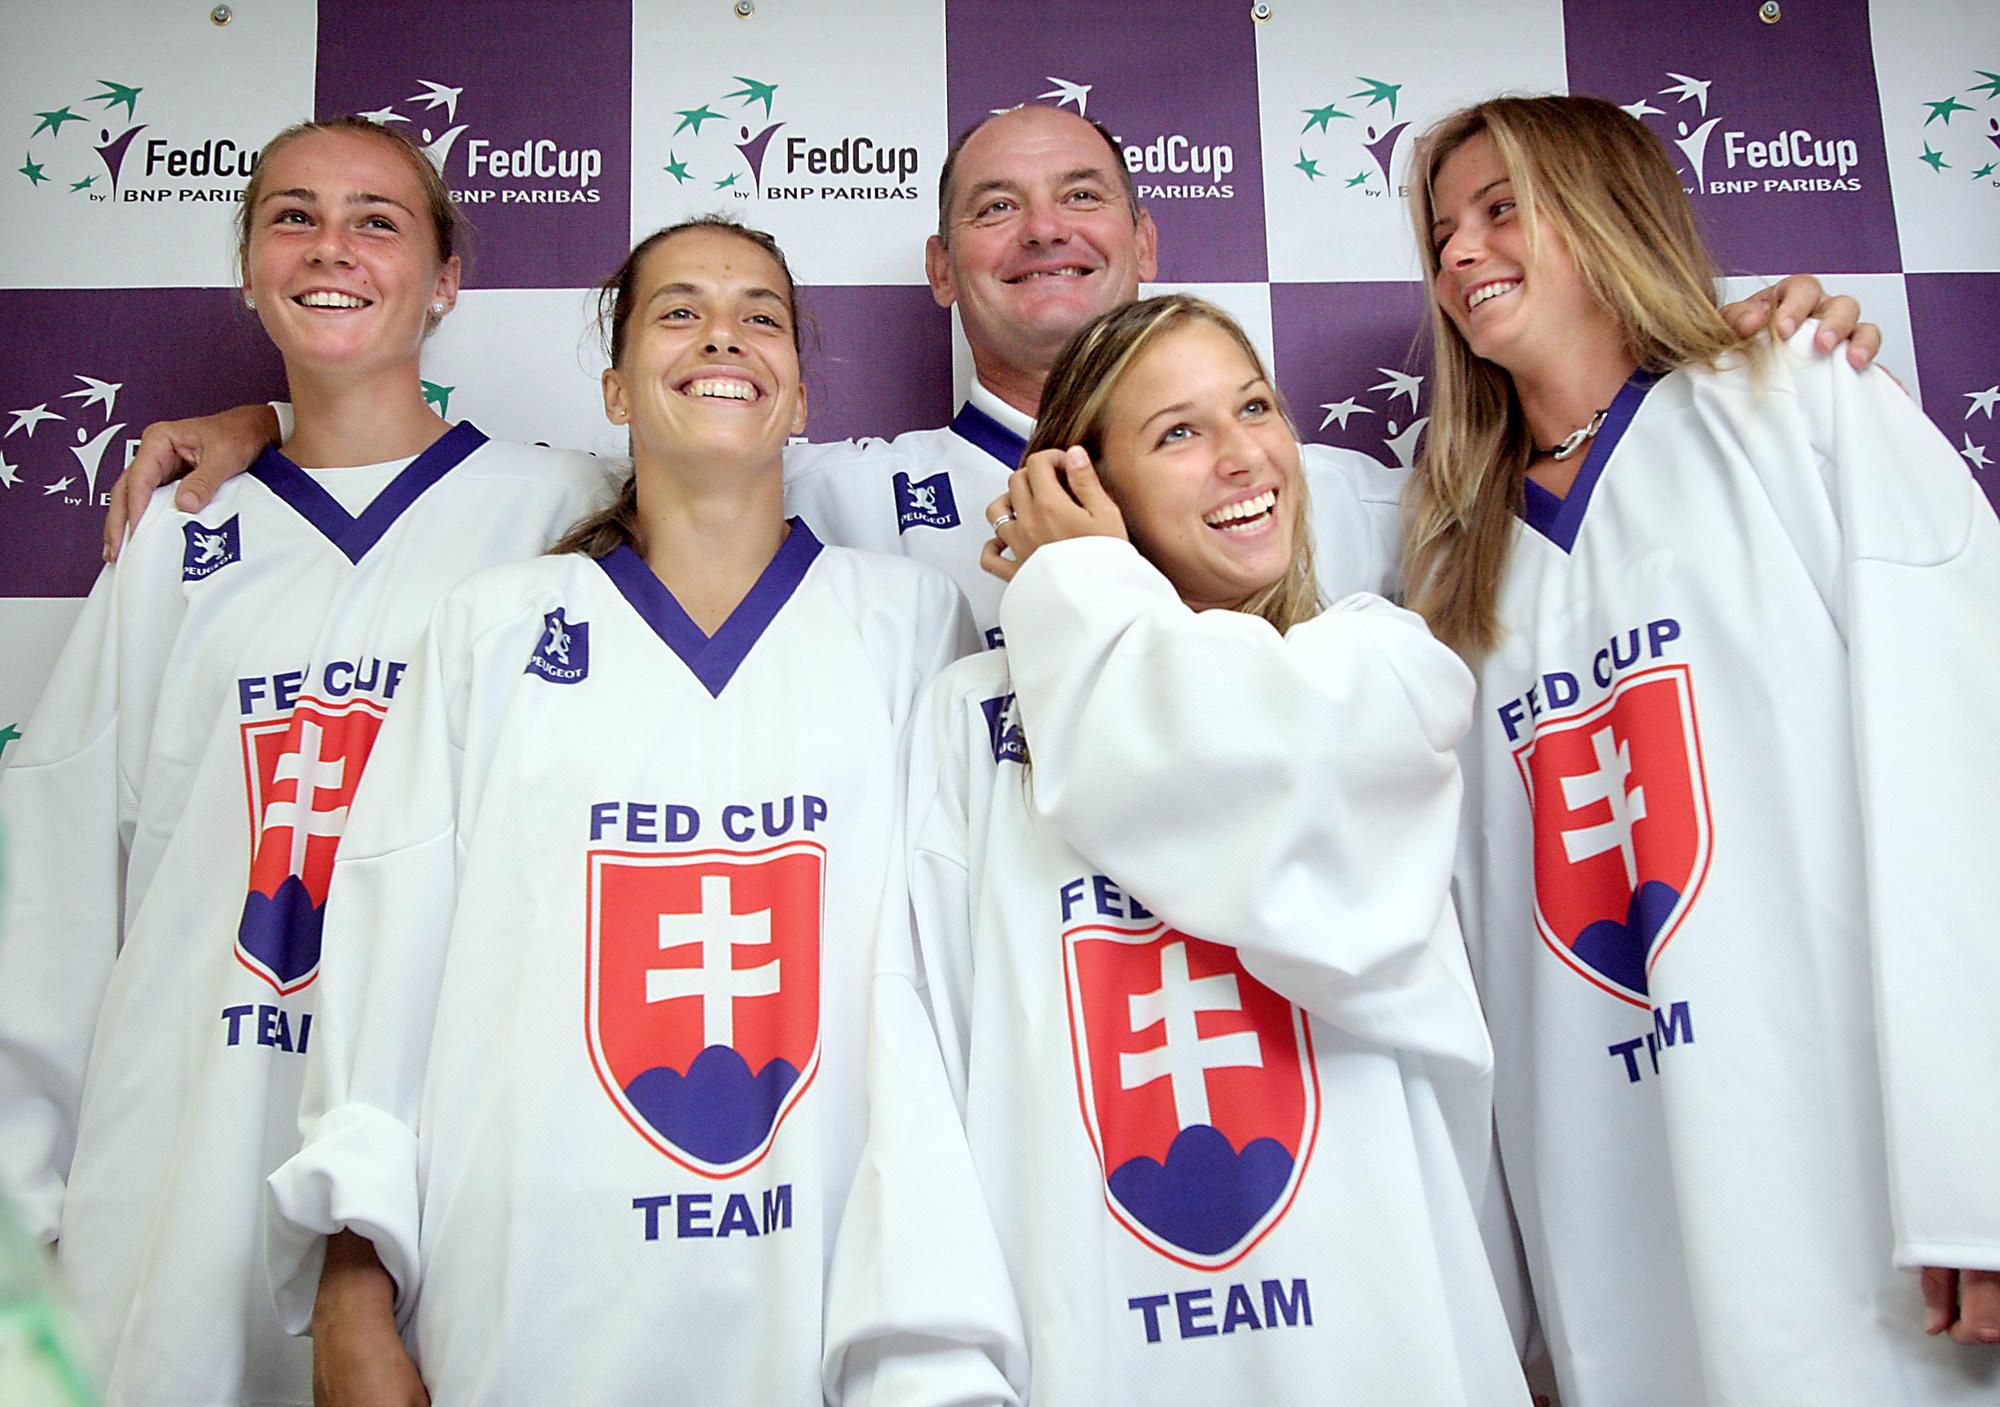 Pri jej debute vyzeral náš fedcupový tím takto - Magdaléna Rybáriková, Janette Husárová, Dominika Cibulková, Daniela Hantuchová a kapitán Mojmír Mihal.